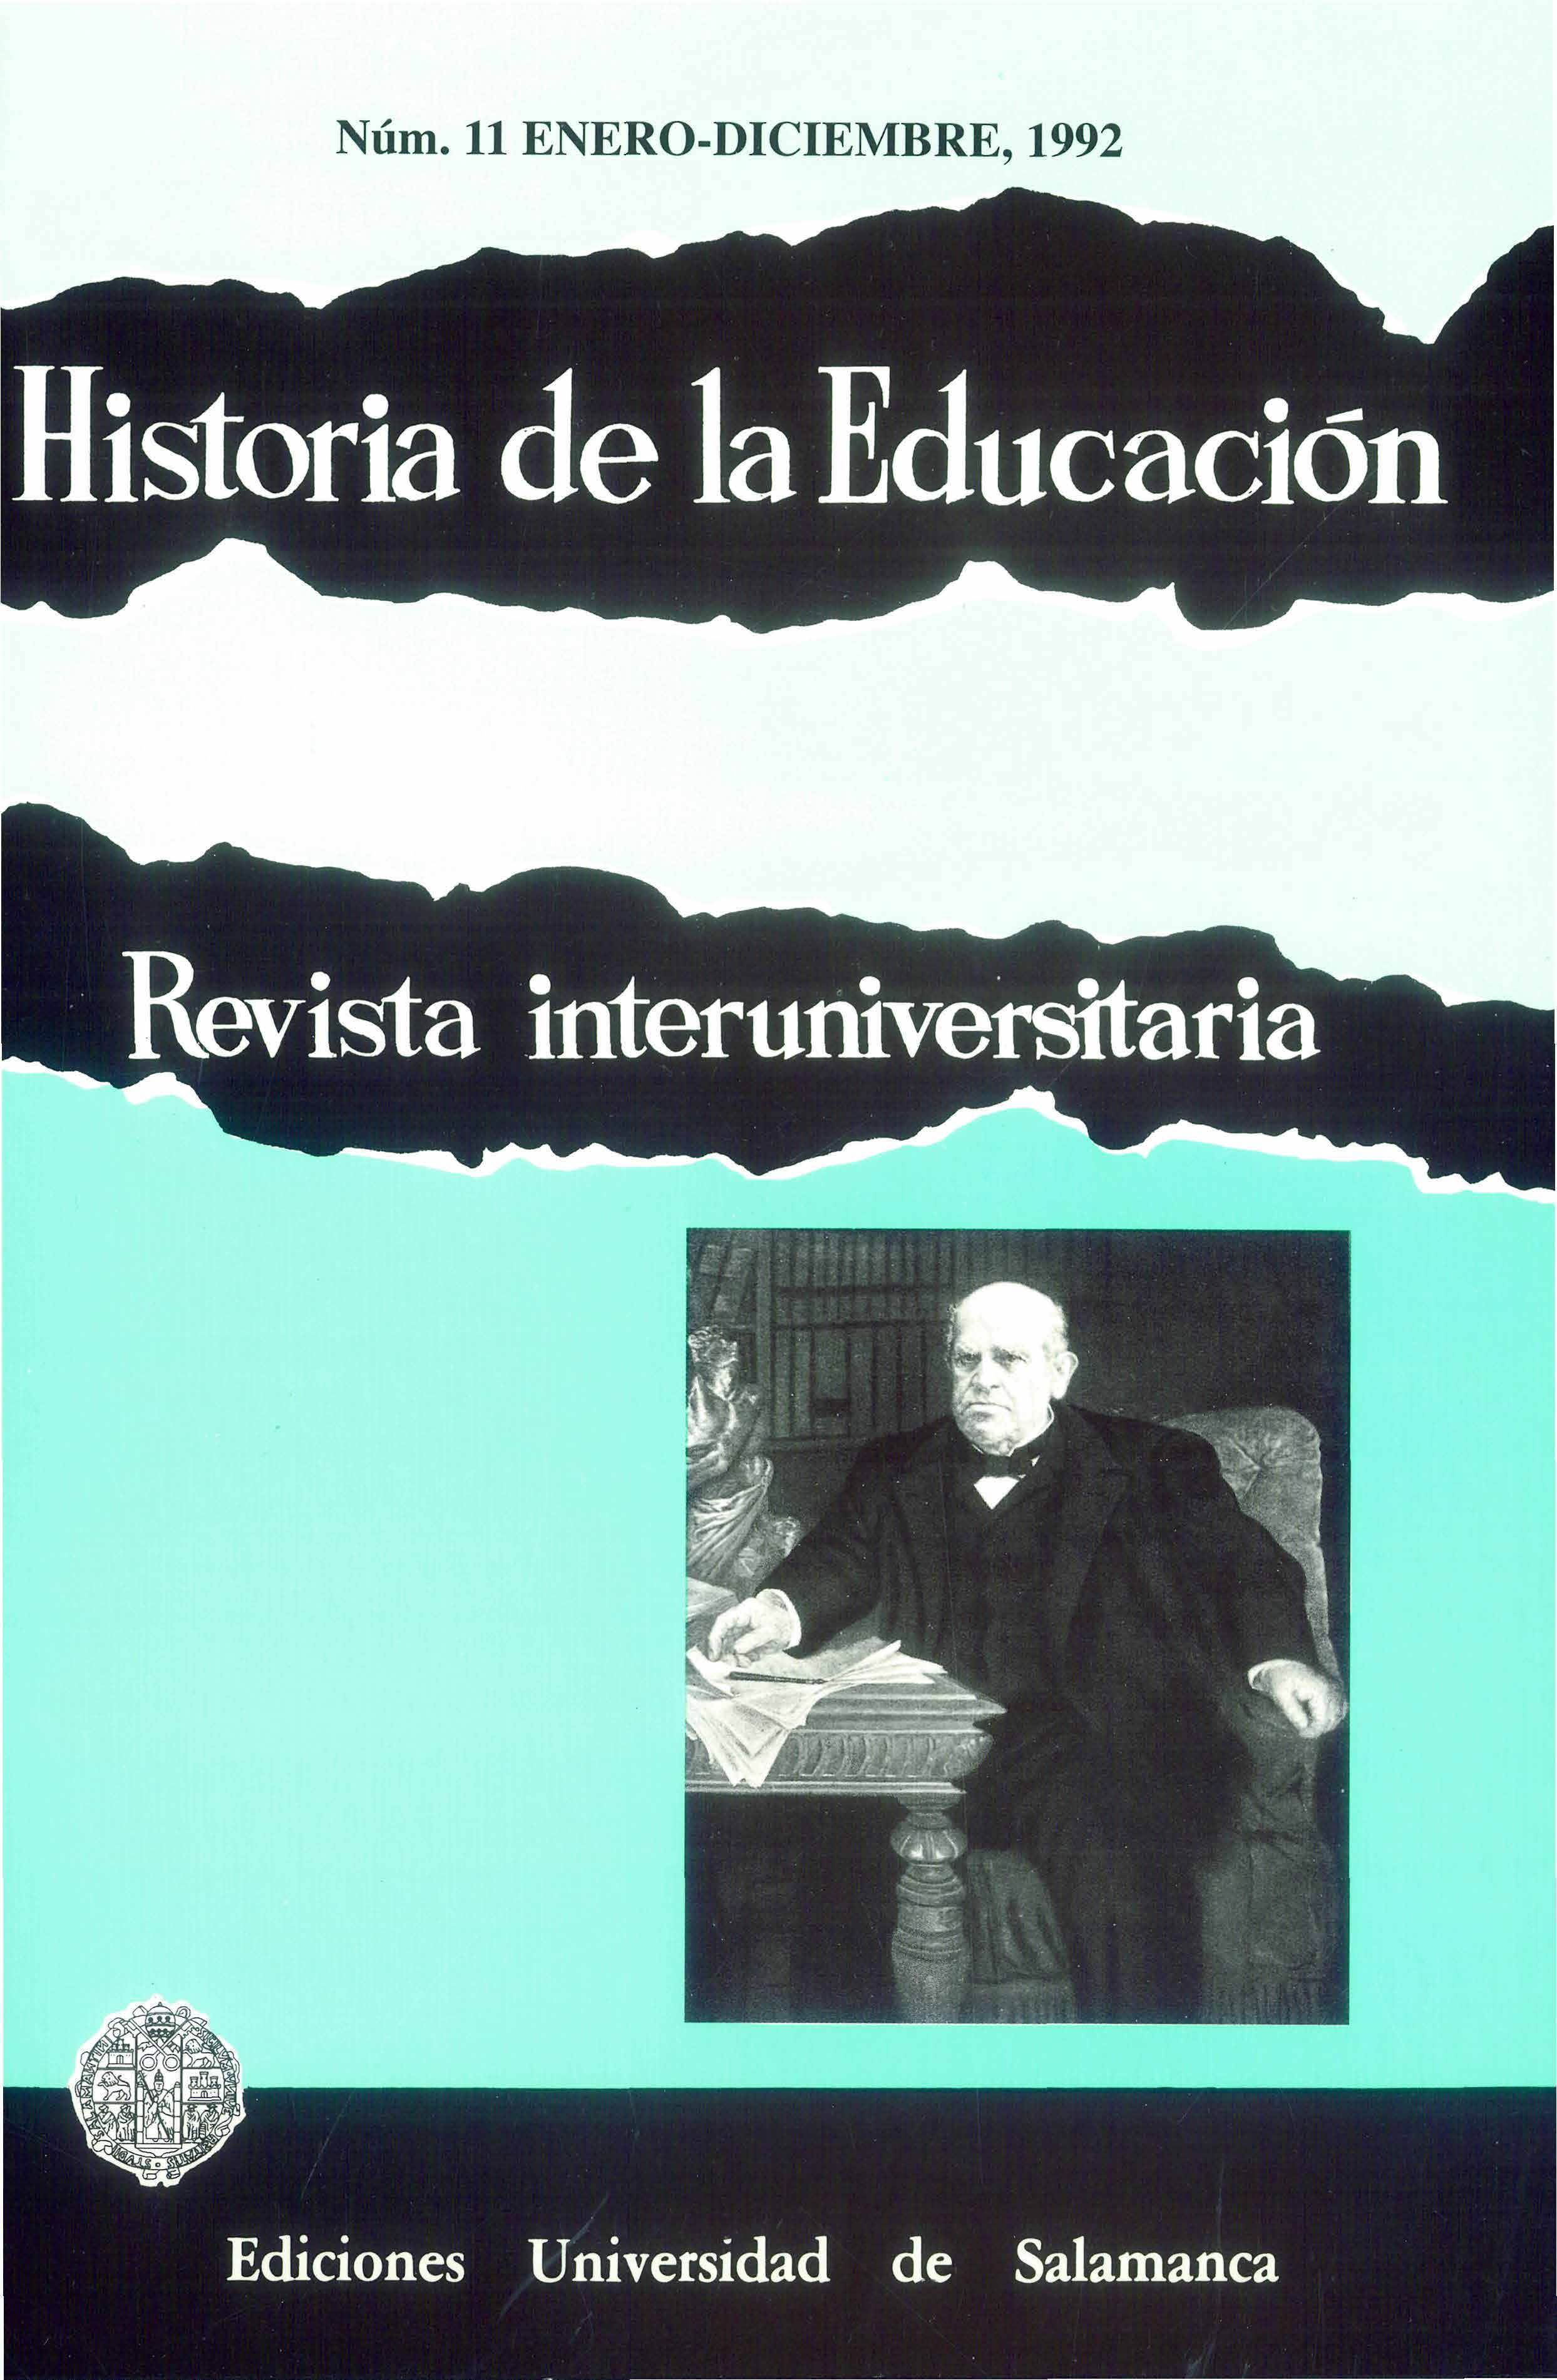                         Ver Vol. 11 (1992): Historia de la Educación Iberoamericana
                    